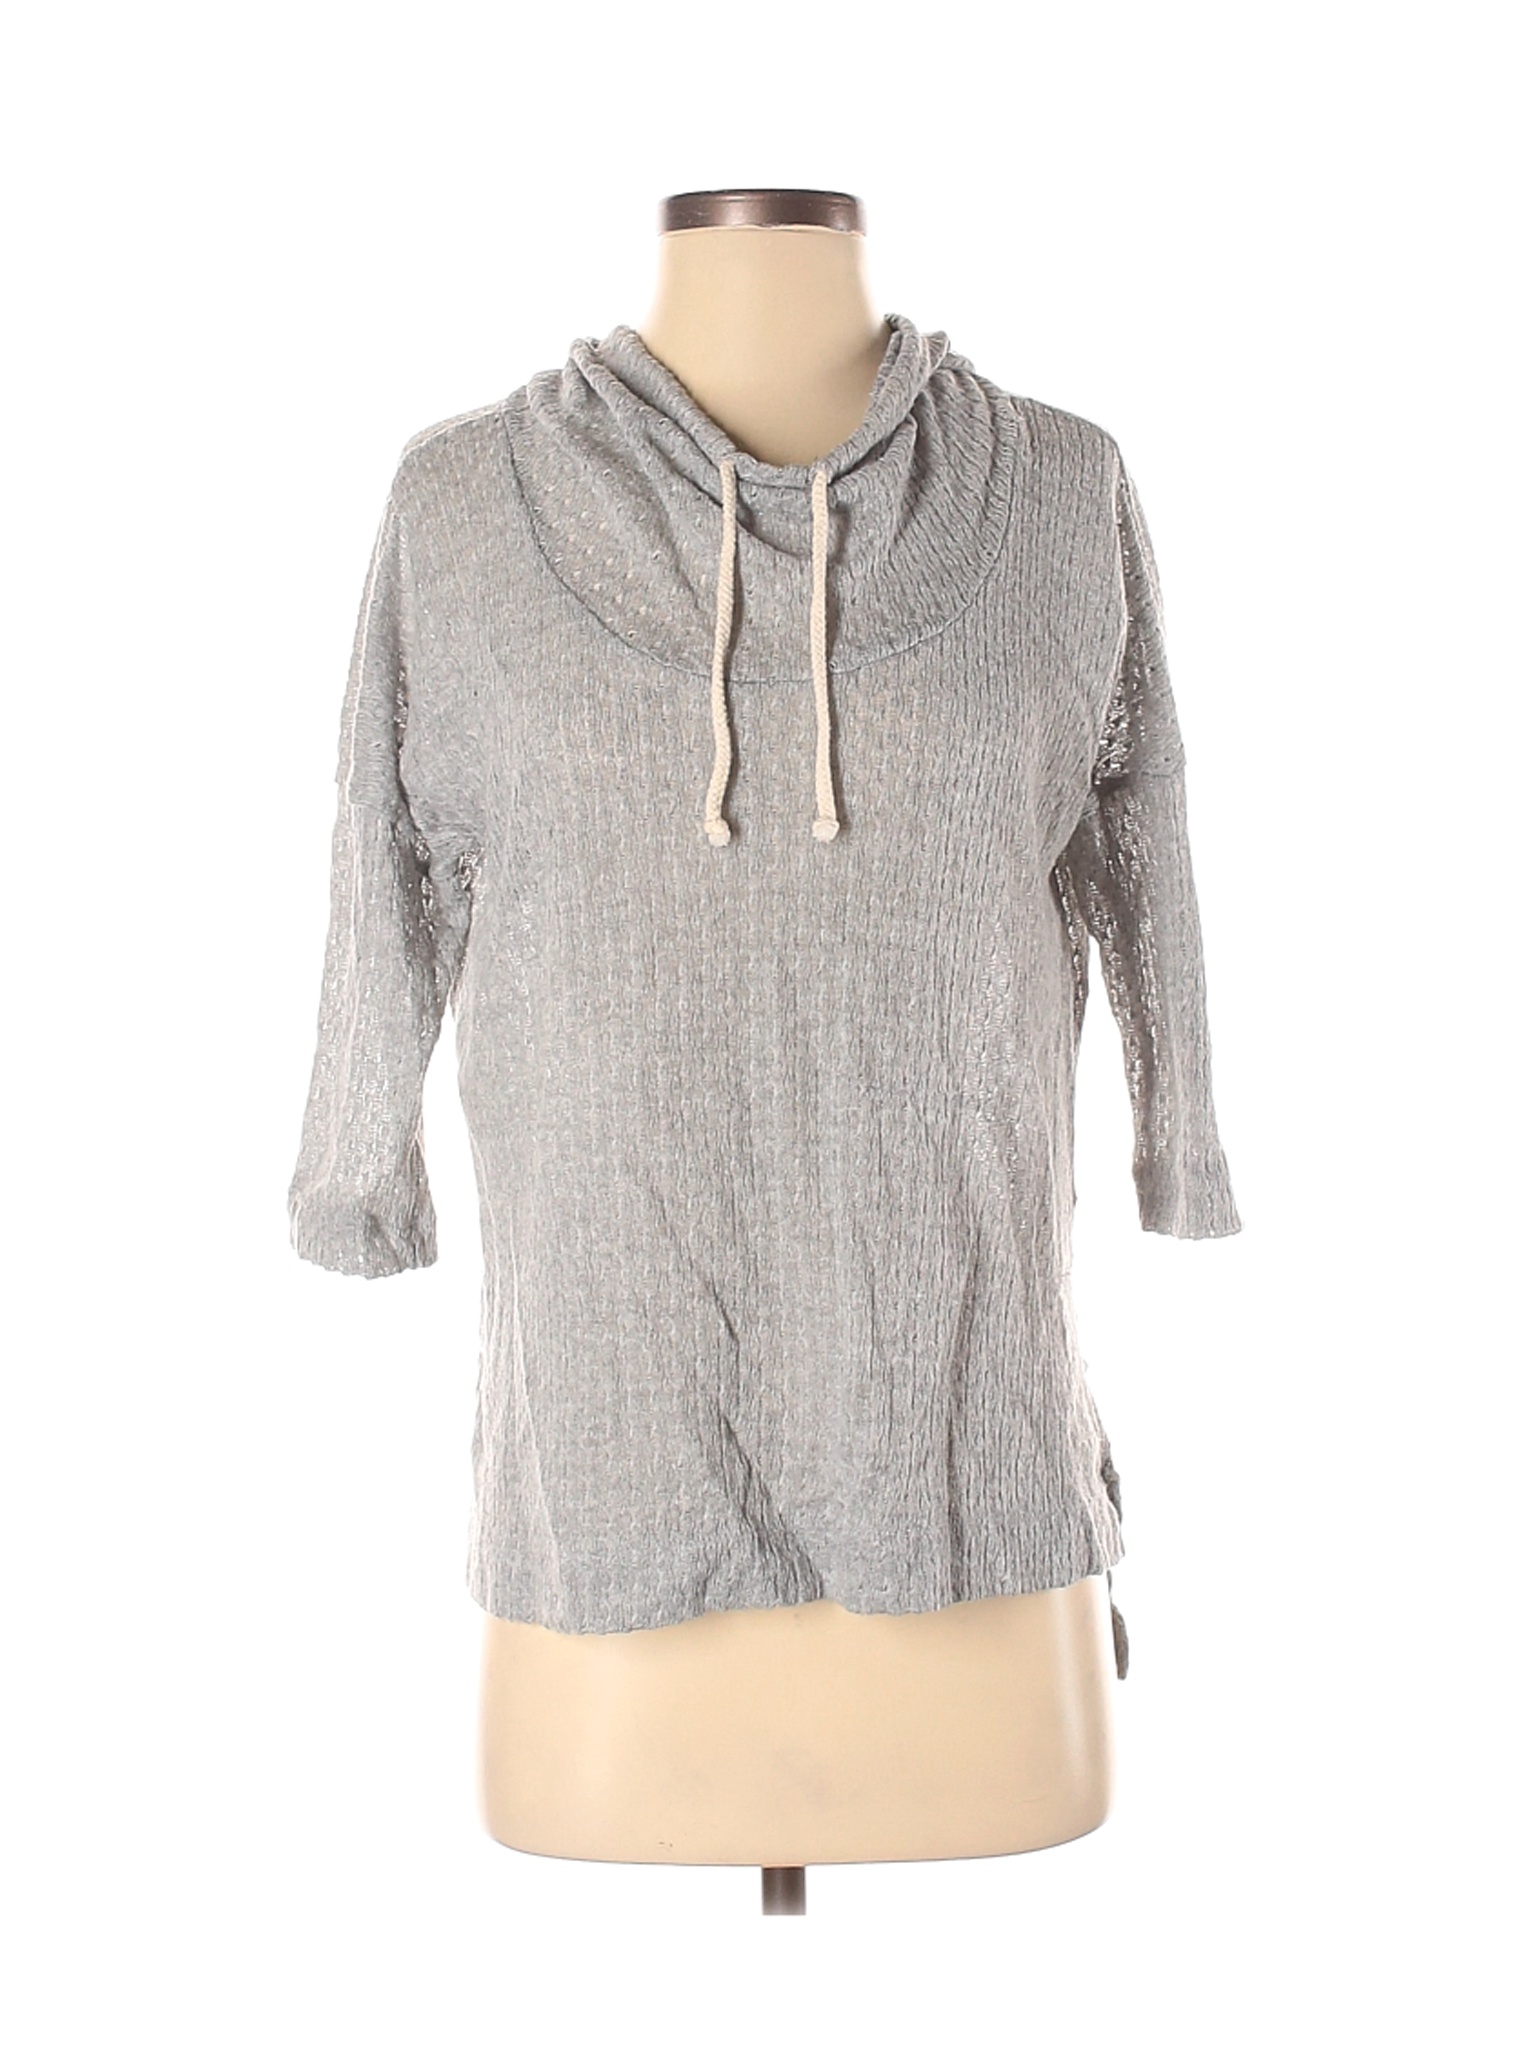 Bobeau Women Gray Pullover Hoodie S | eBay